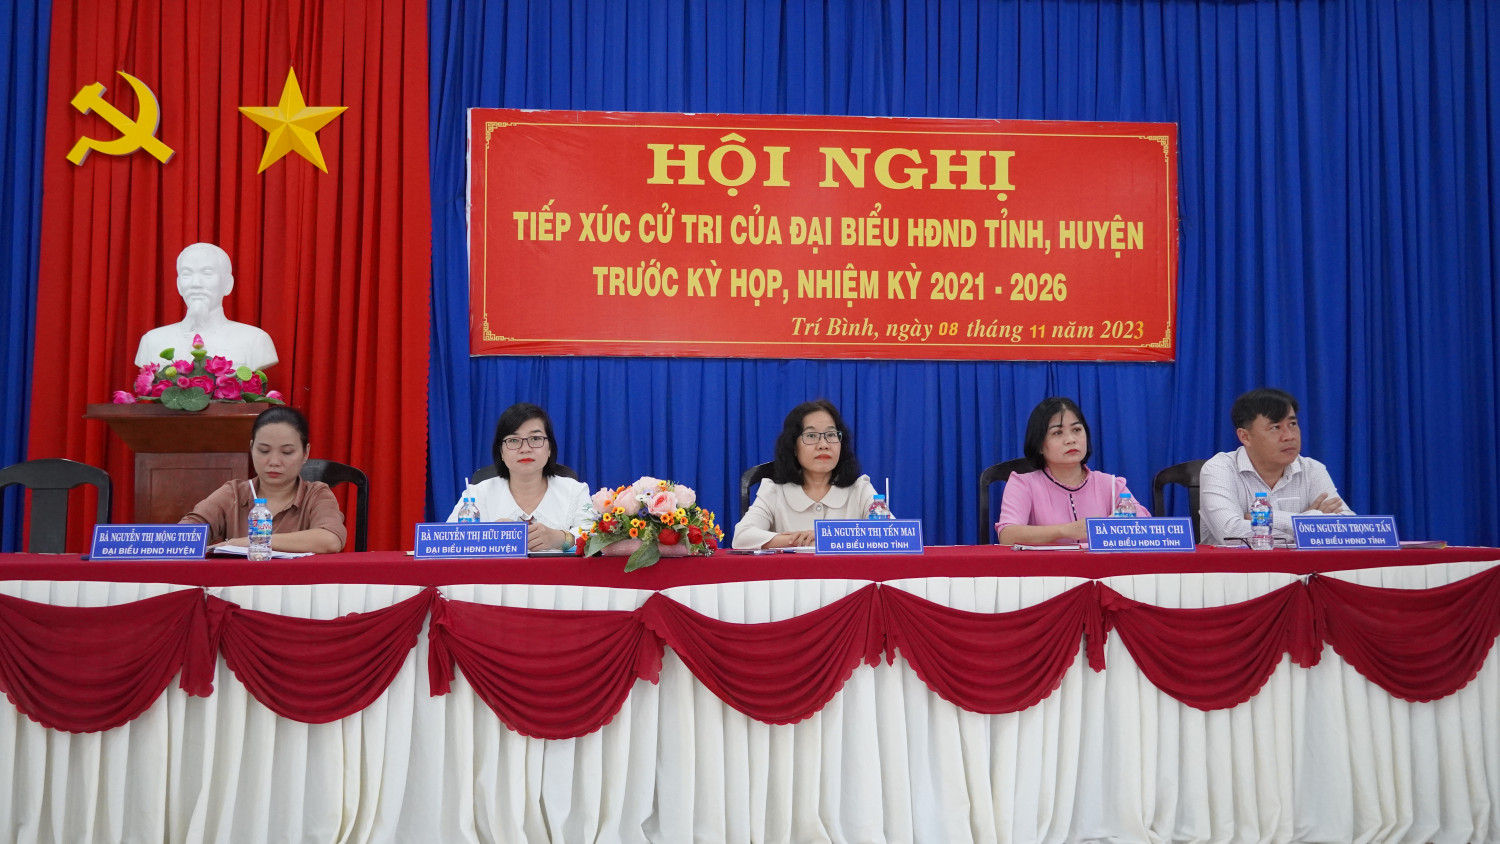 Đại biểu HĐND tỉnh, huyện tiếp xúc cử tri xã Trí Bình và Thị trấn Châu Thành